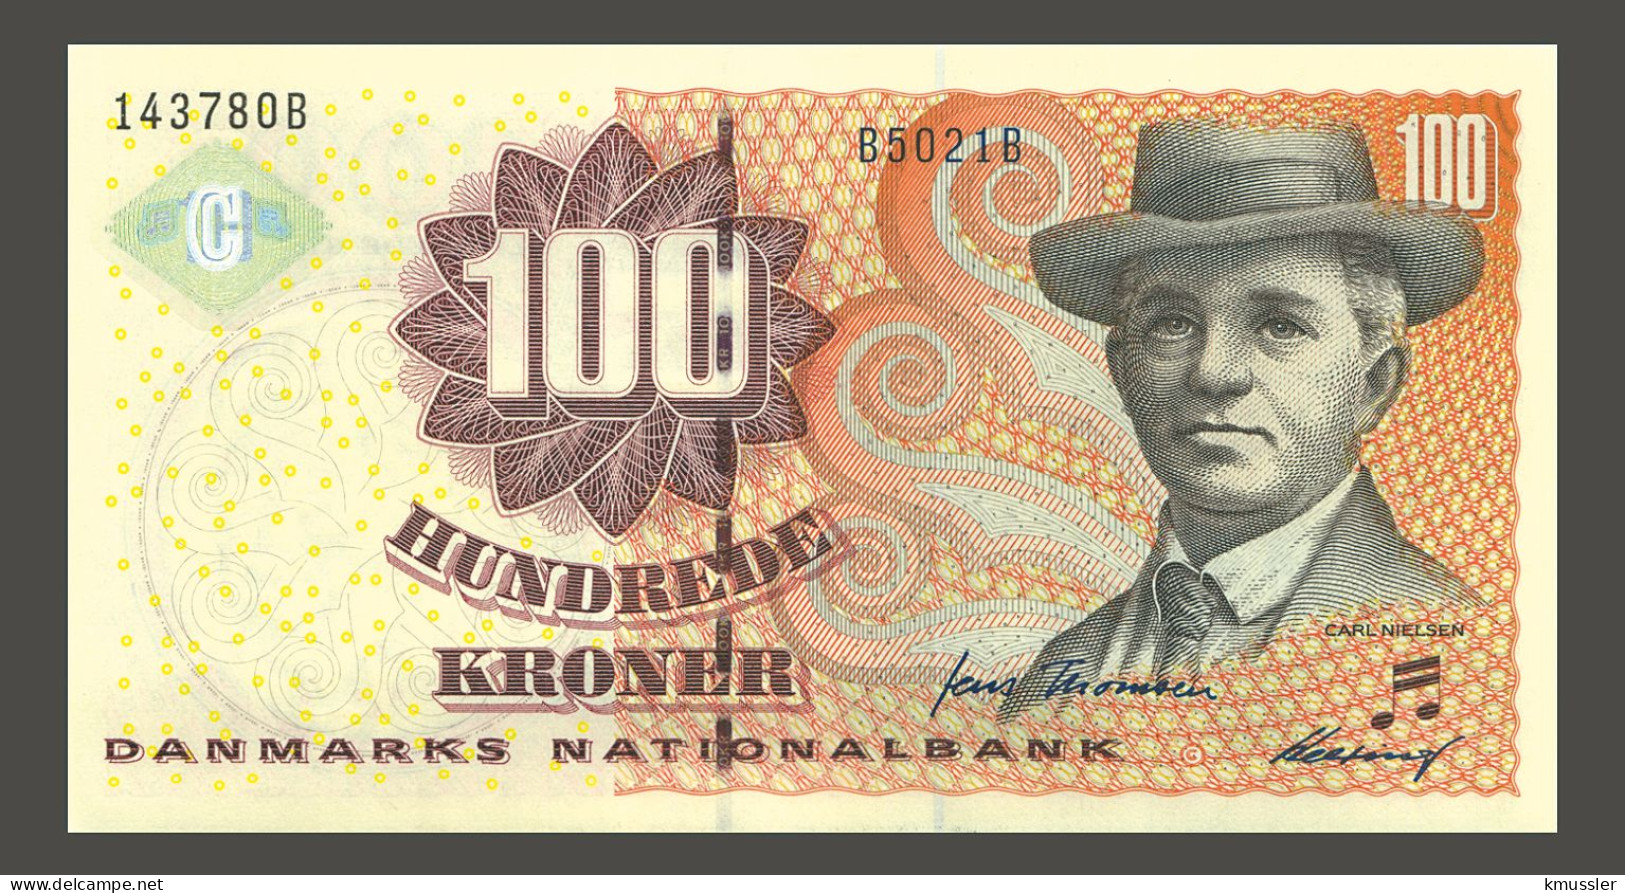 # # # Banknote Dänemark (Denmark) 100 Kroner 2002 (P-61) UNC # # # - Dänemark